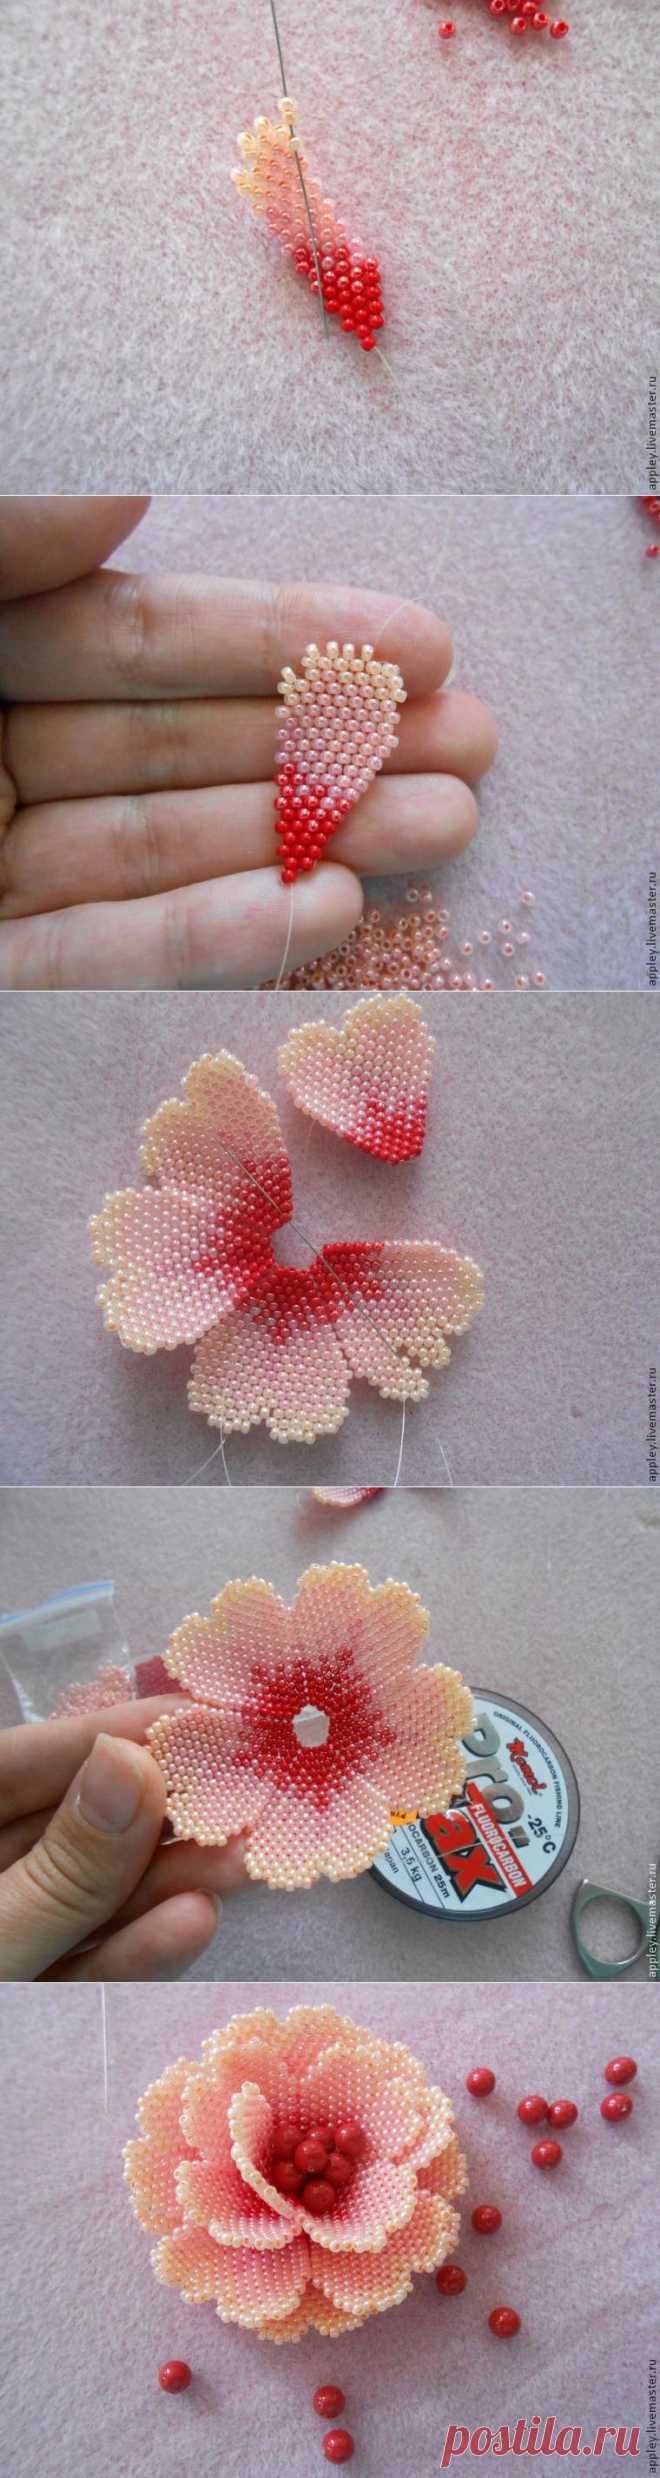 Как сделать маленький цветок из бисера - Ярмарка Мастеров - ручная работа, handmade